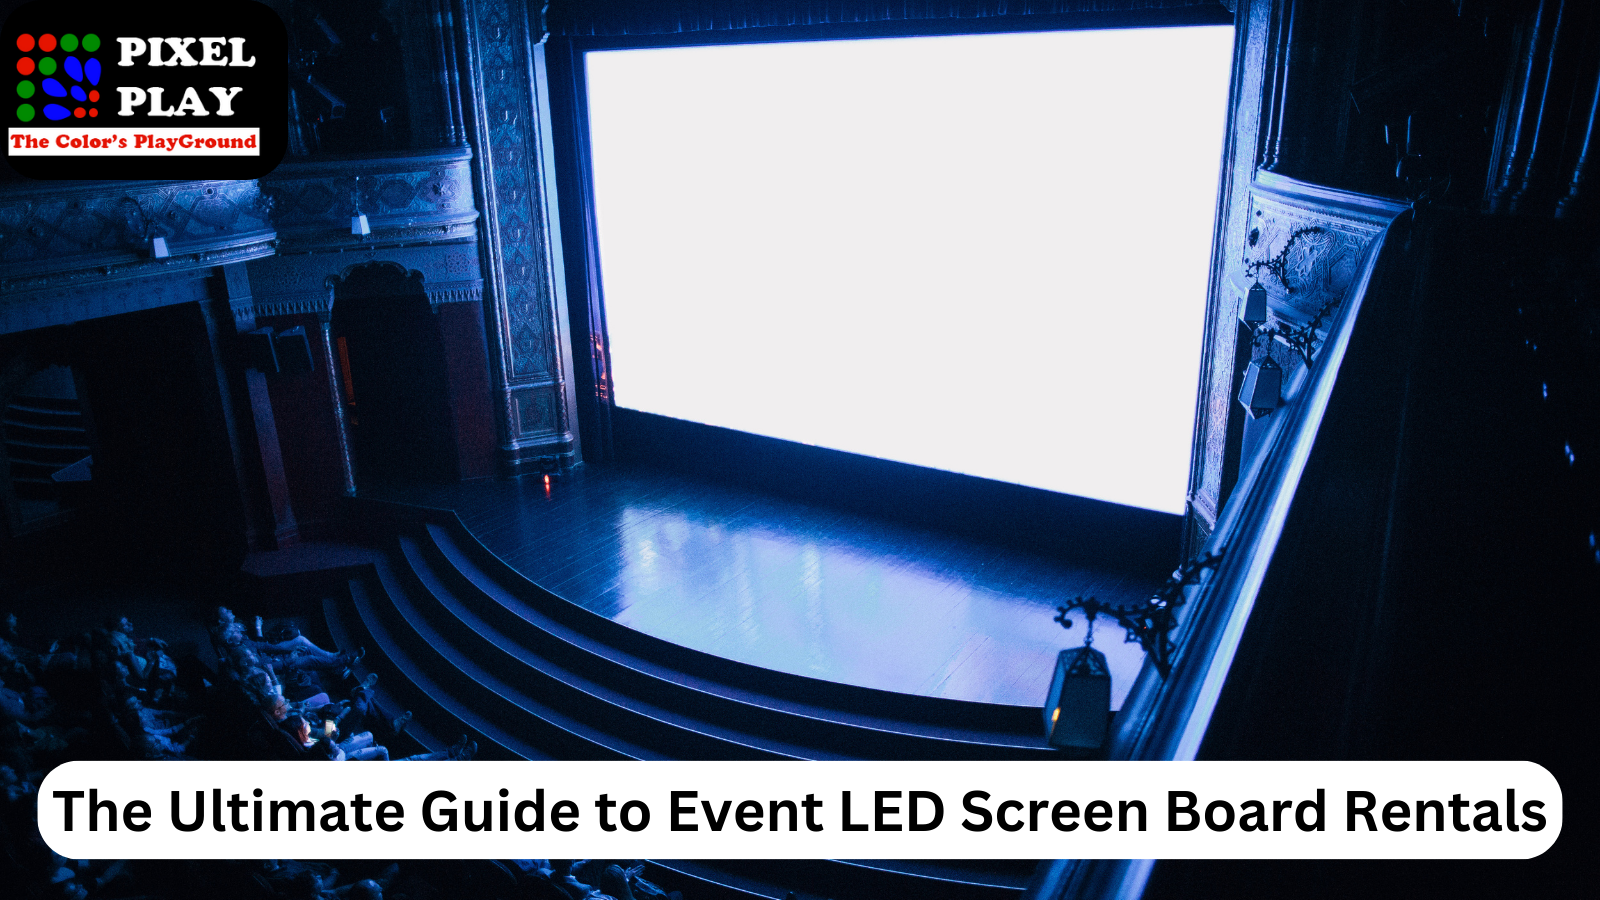 LED SCreen Board Rentals